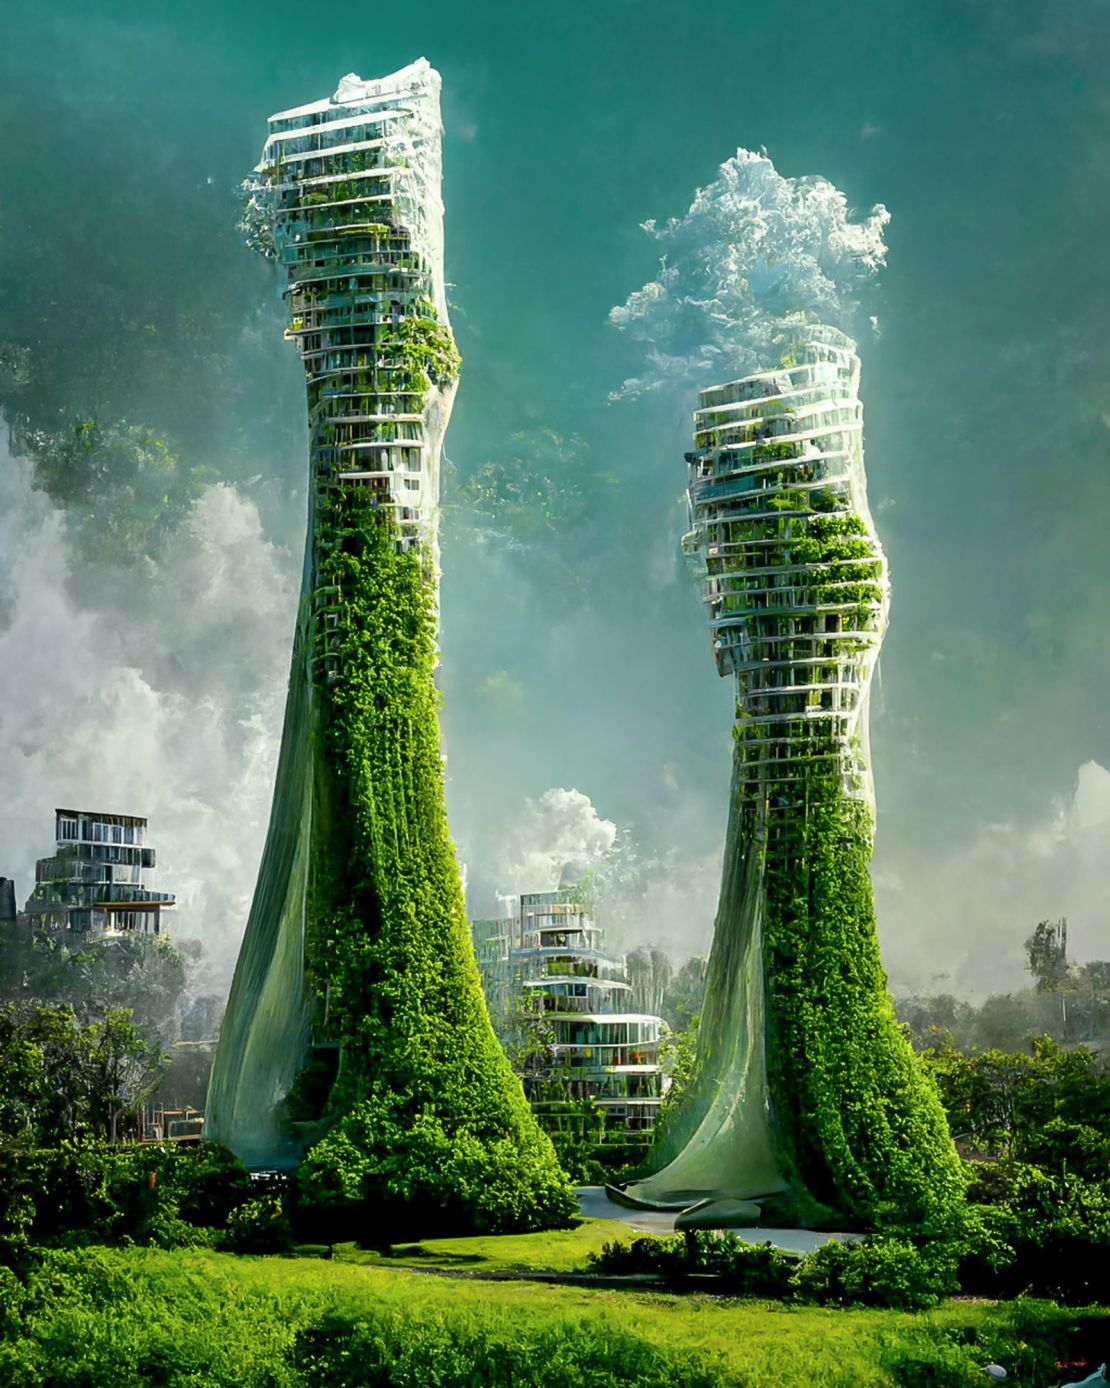 Futuristic HighRise Skyscraper Concepts Innovative Architectural Designs